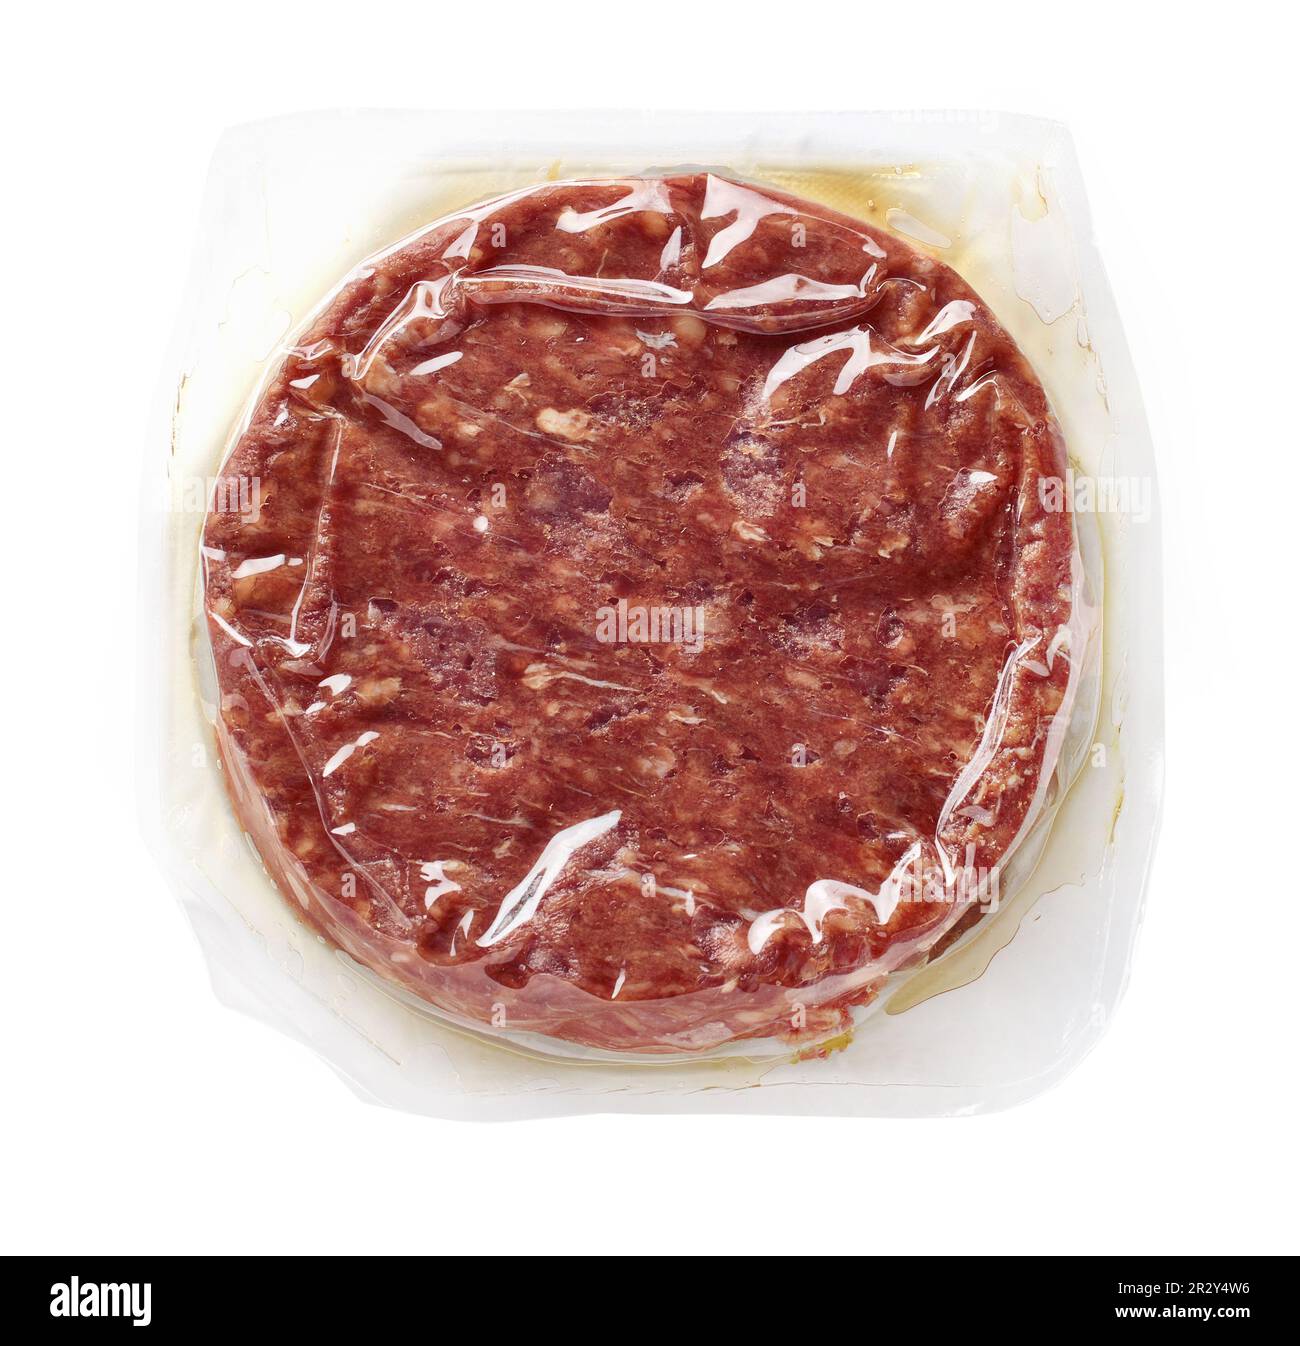 Rohes Rindfleisch-Burgerfleisch für Hamburger vakuumverpackt auf weißem Hintergrund, Draufsicht Stockfoto